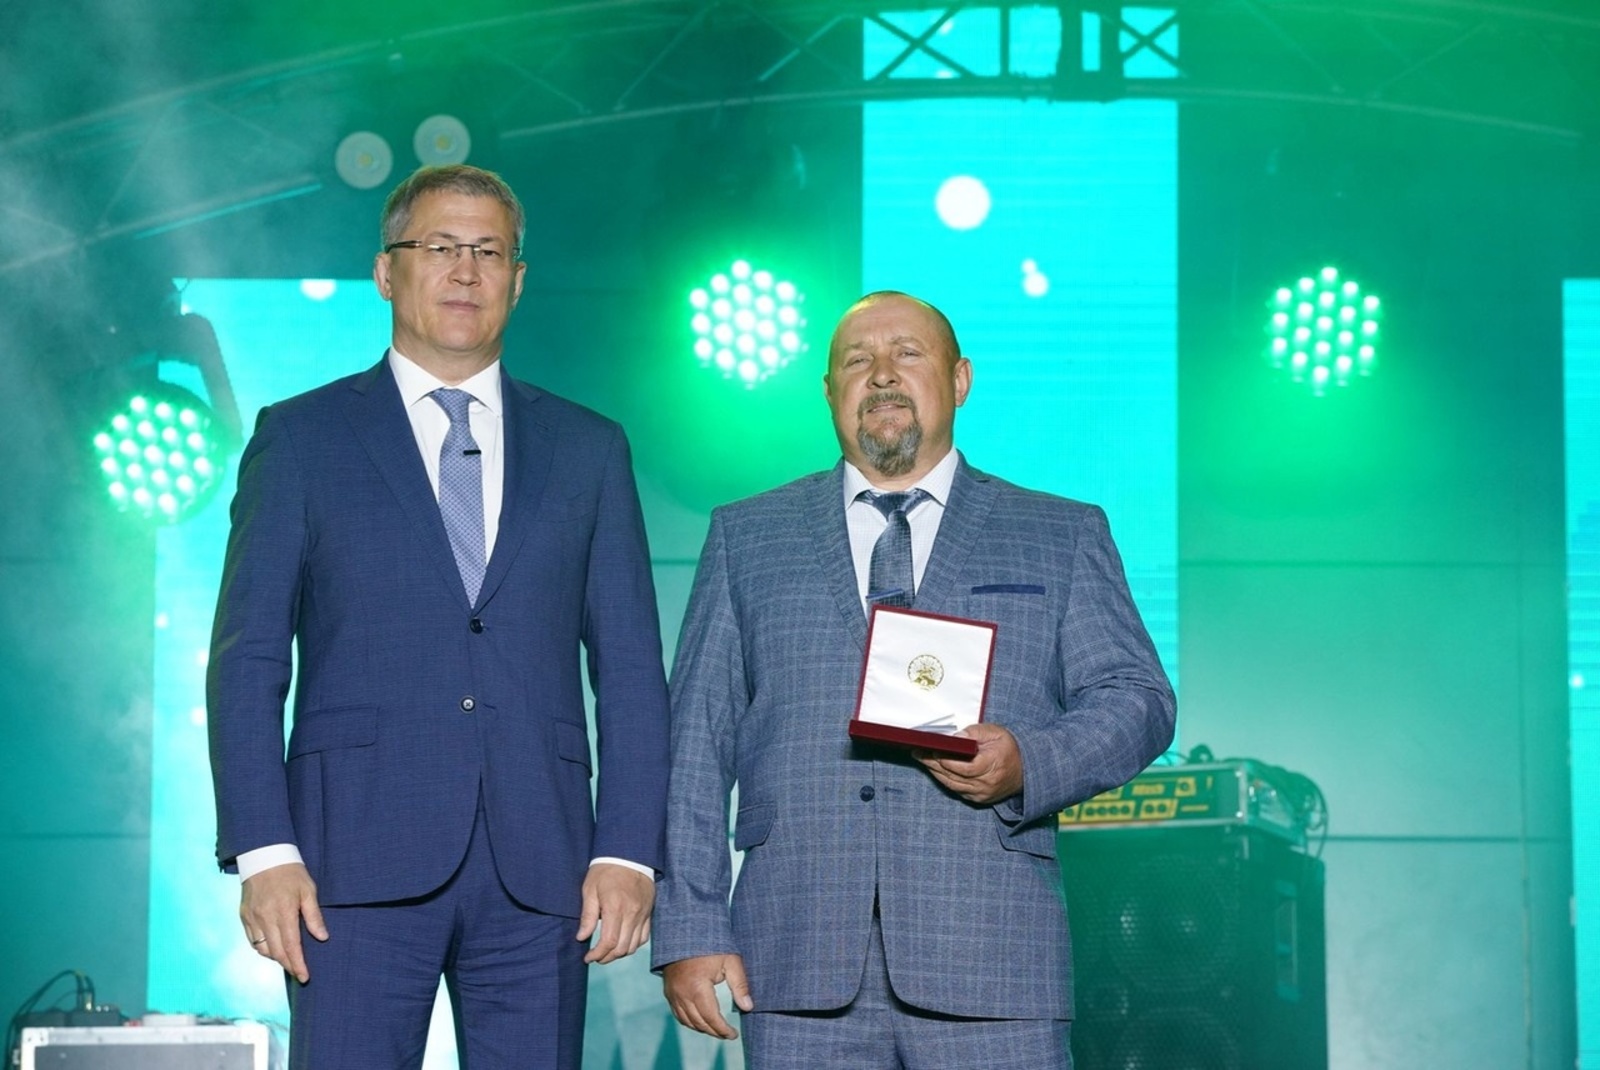 Индивидуальному предпринимателю из села Бурибай Сергею Туленкову присвоено почетное звание "Заслуженный предприниматель РБ".